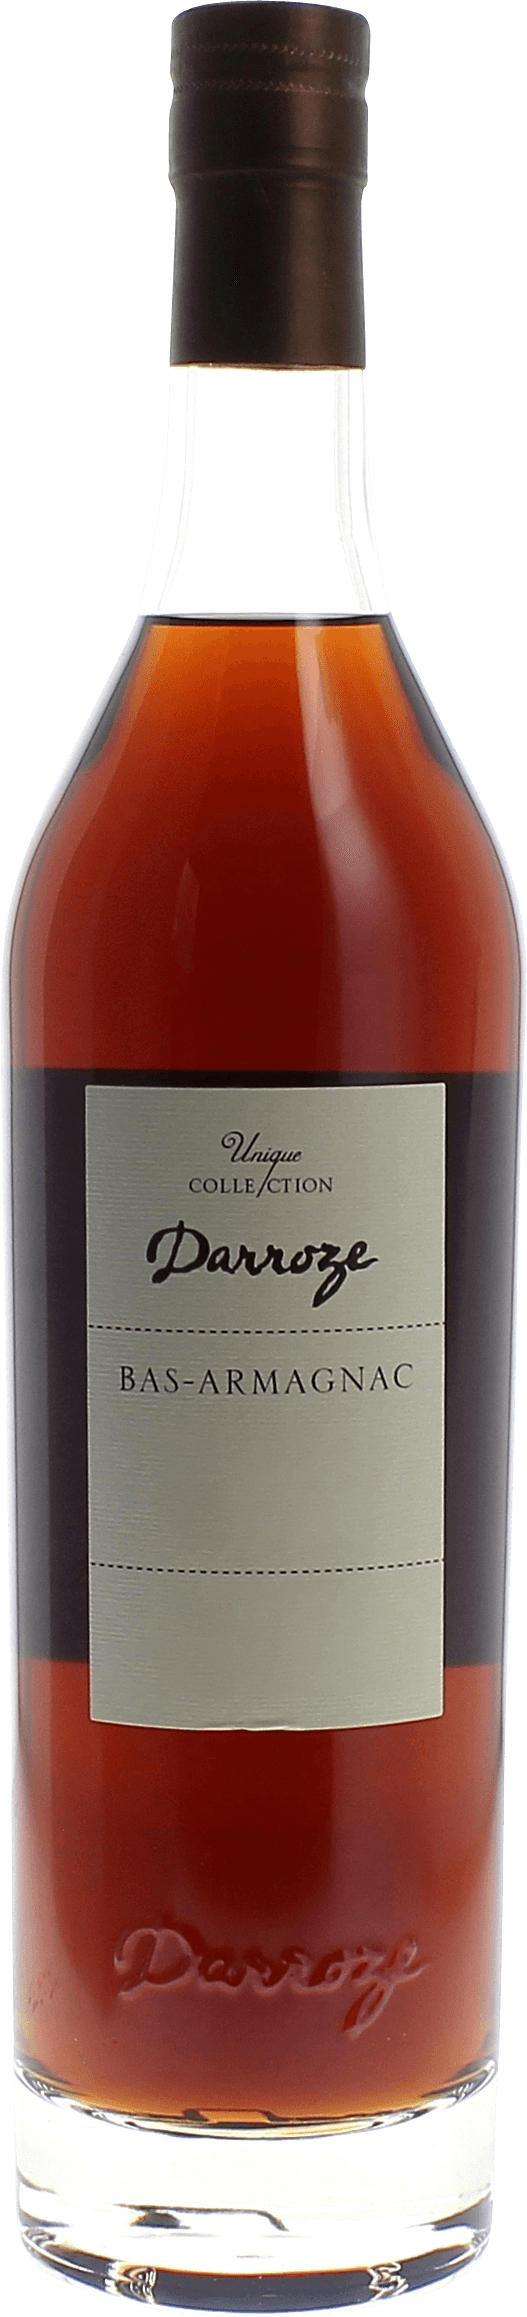 Domaine de lamarquette 50 1990  Bas Armagnac, DARROZE  Francis Bas Armagnac